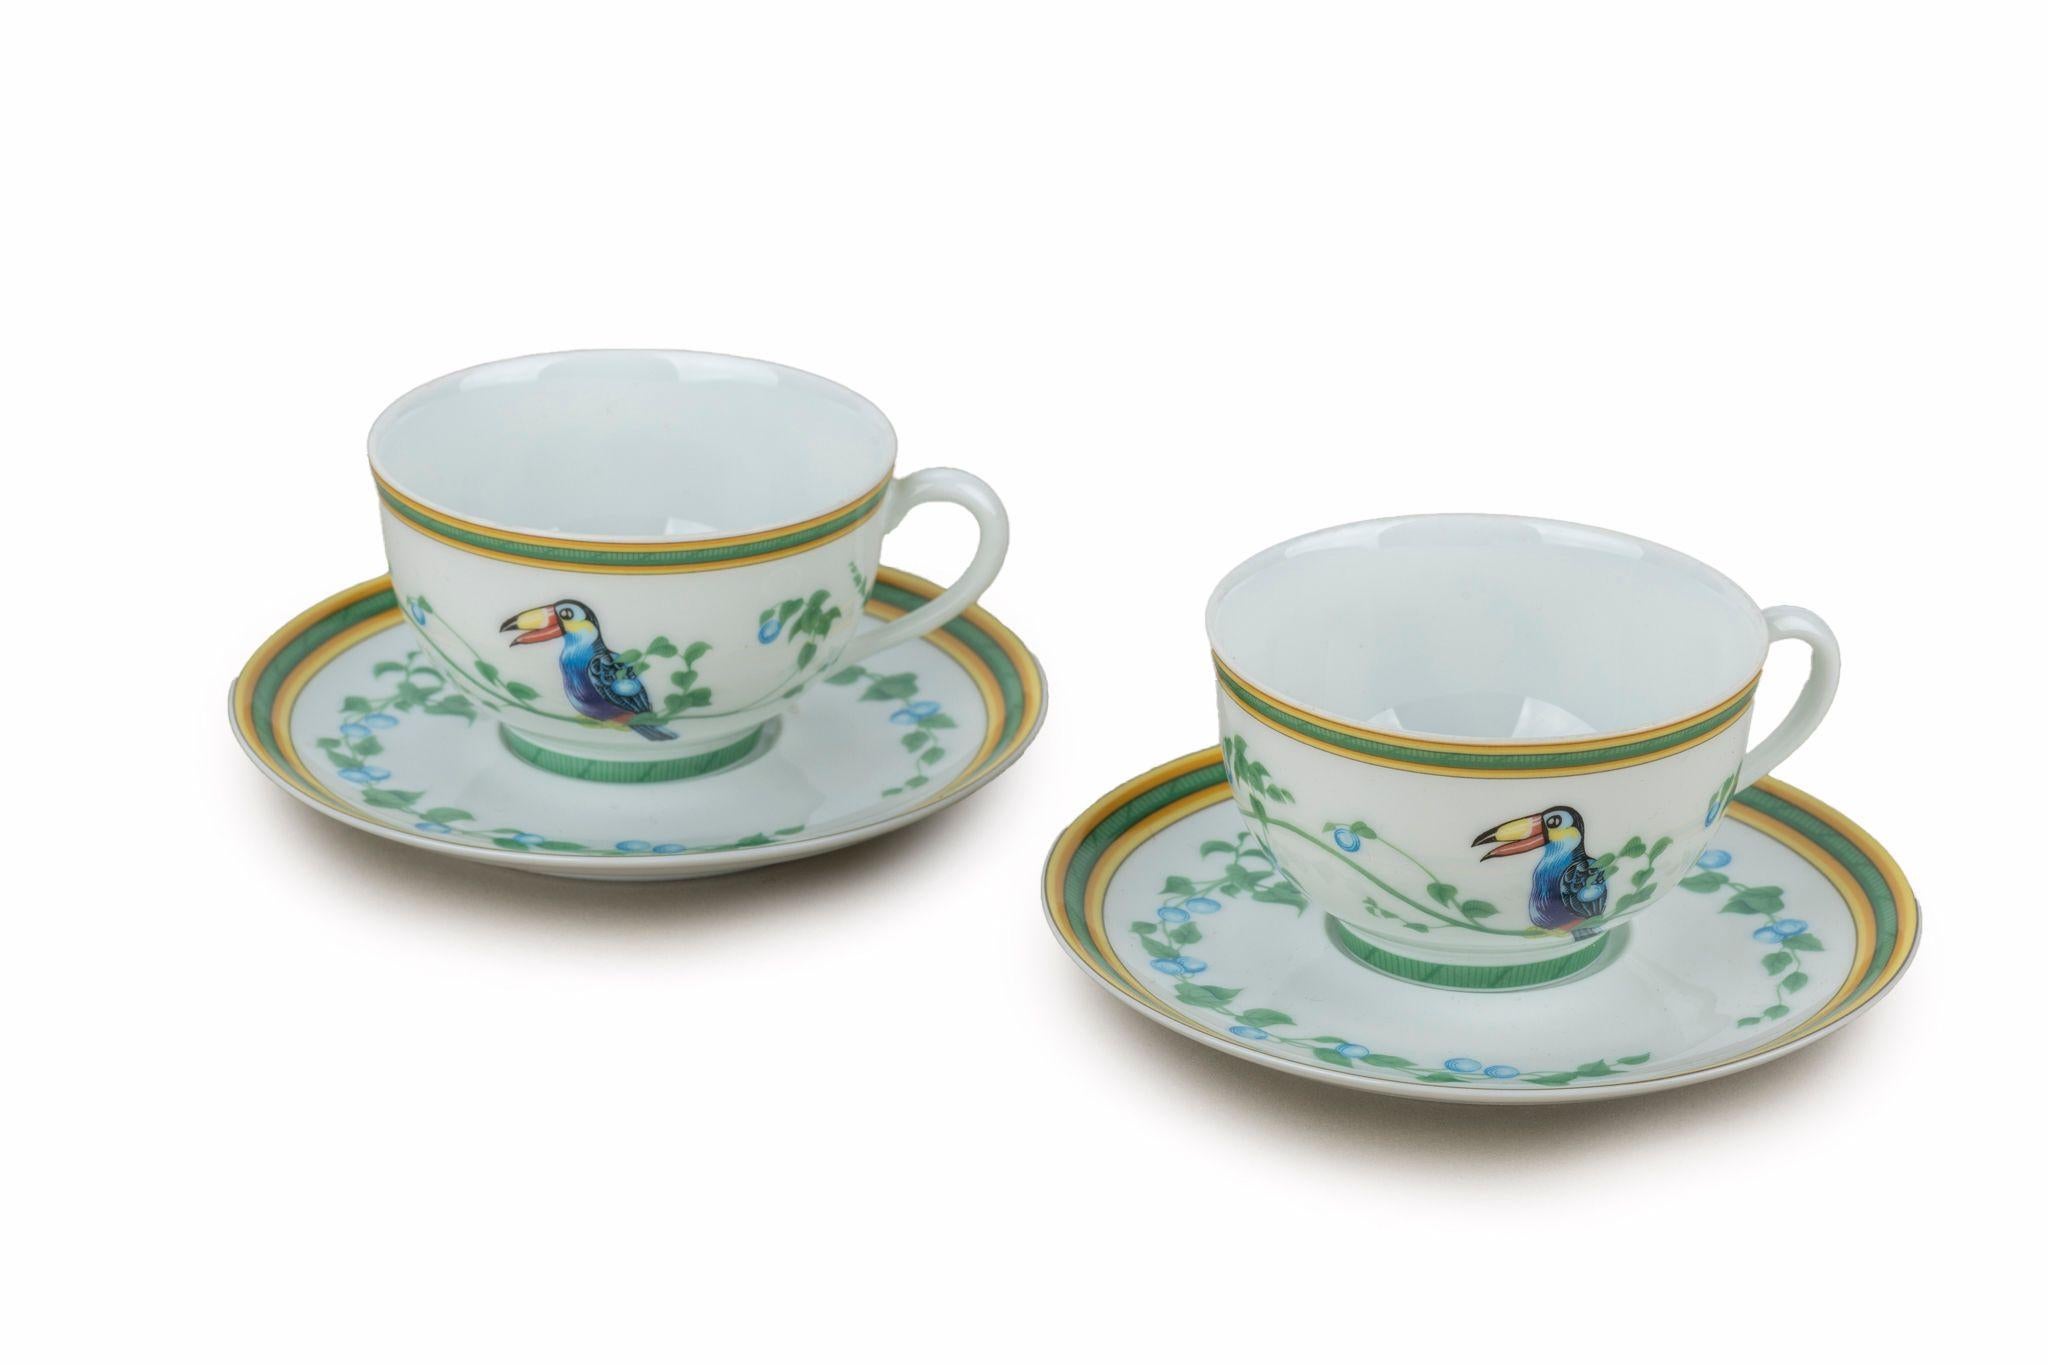 Set aus zwei Teetassen und Untertassen von Hermès mit Tukan-Motiv aus Porzellan.
Kommt mit Originalverpackung.